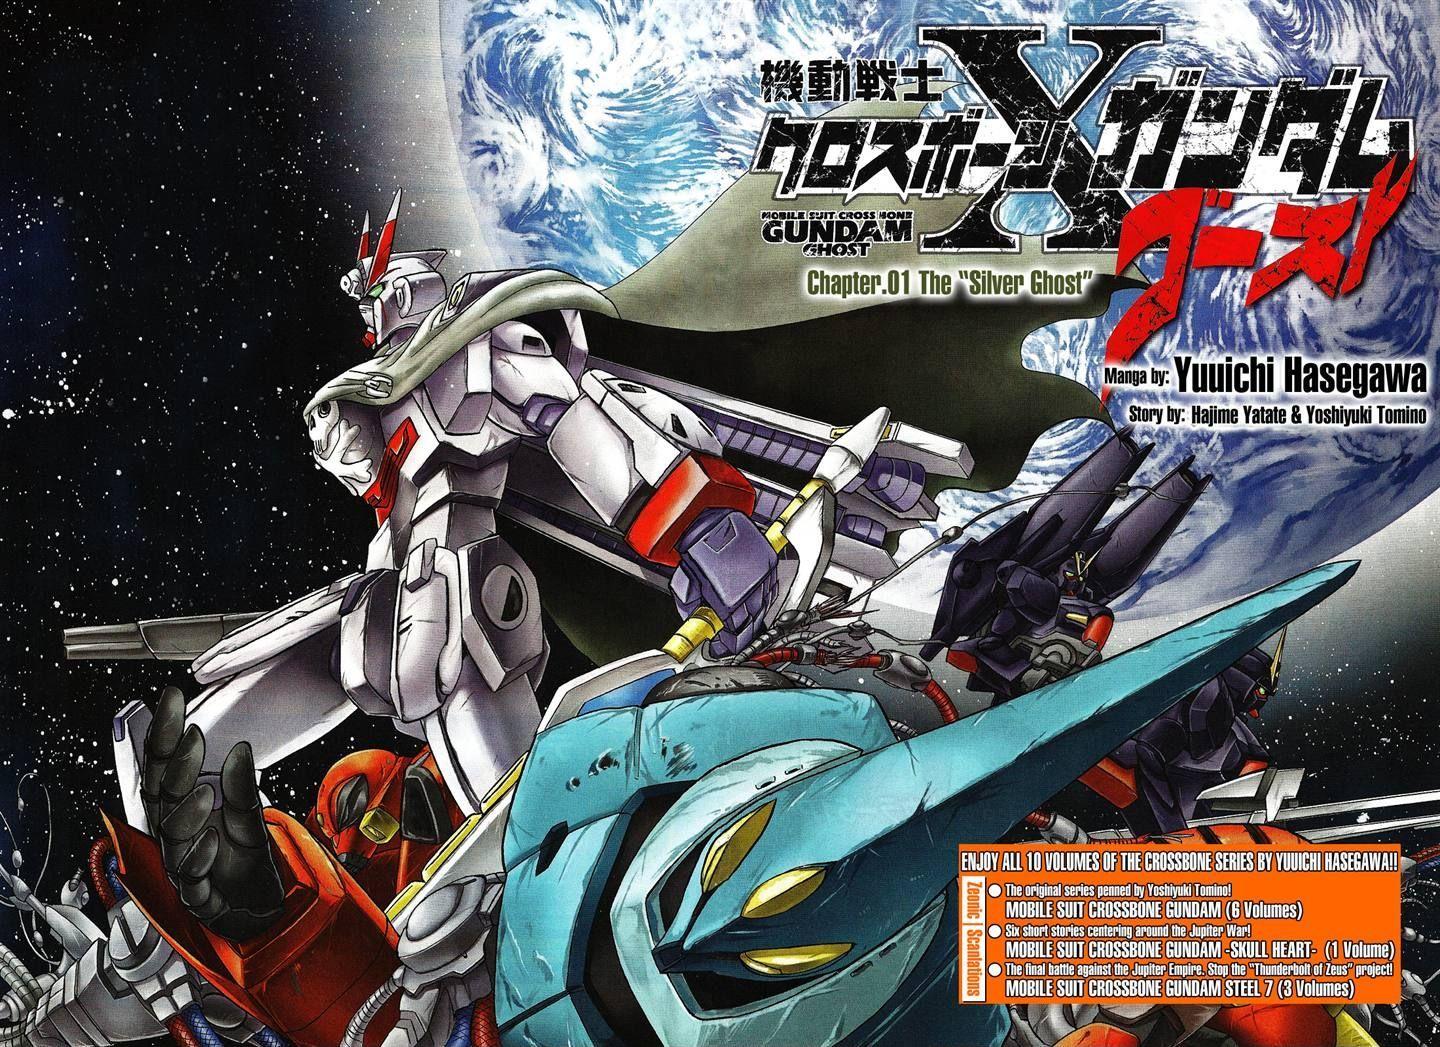 Anime  crossbone gundam  Gundam  crossbone gundam x1  crossbone  gundam x2  Anime без Няш  mecha  JoyReactor